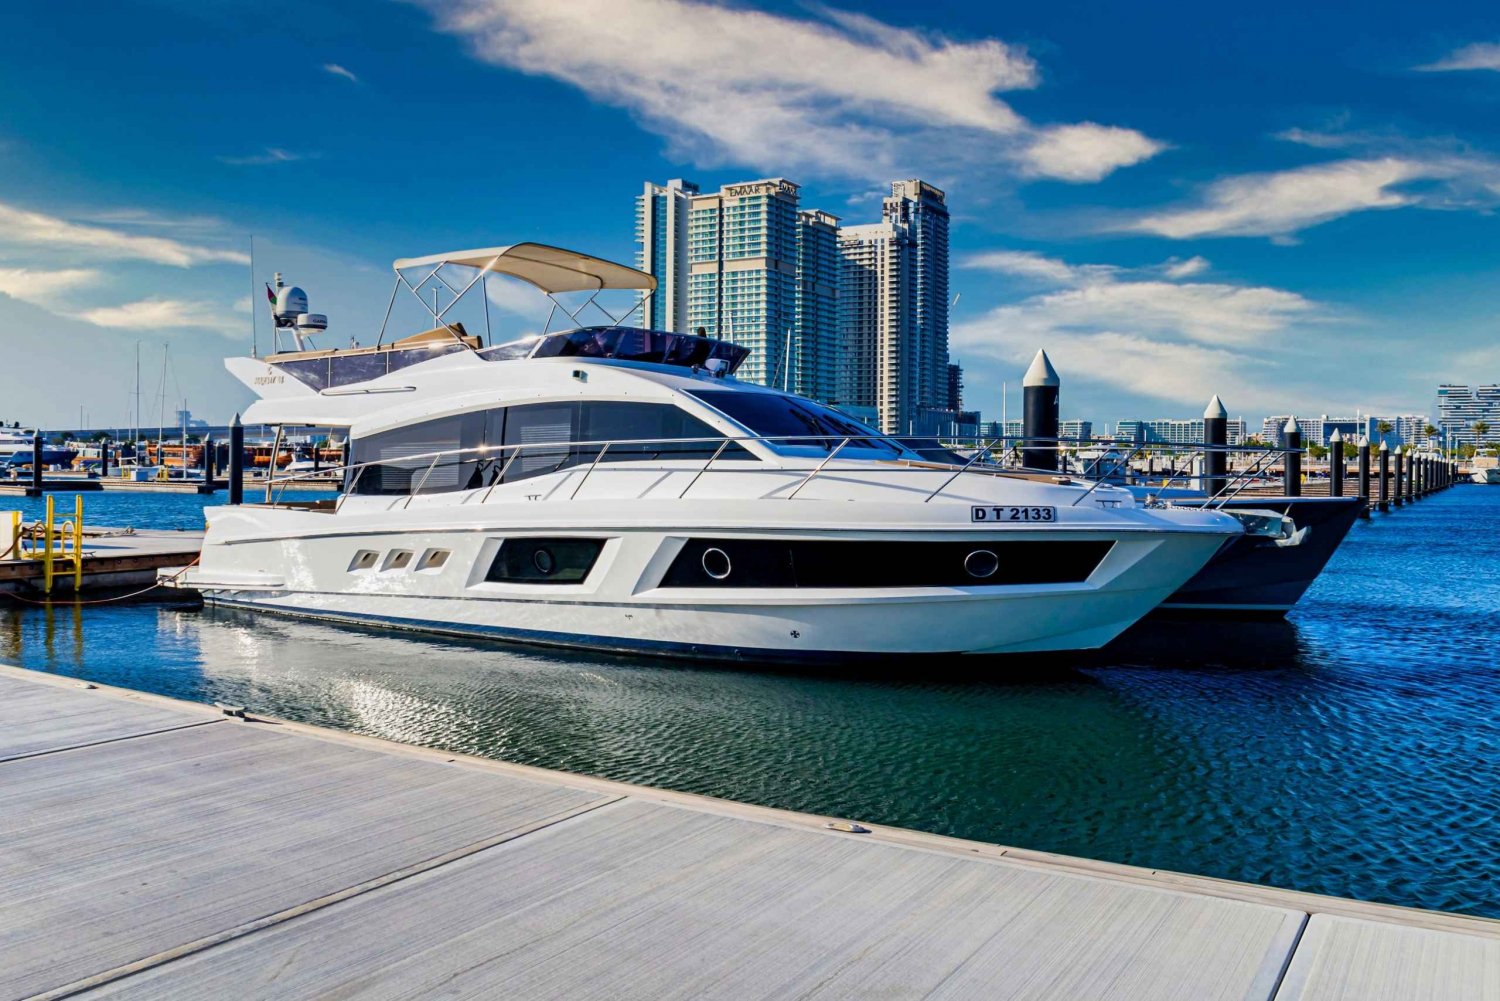 Découvrez l'île cachée de Dubaï avec le Majesty 48ft Yacht